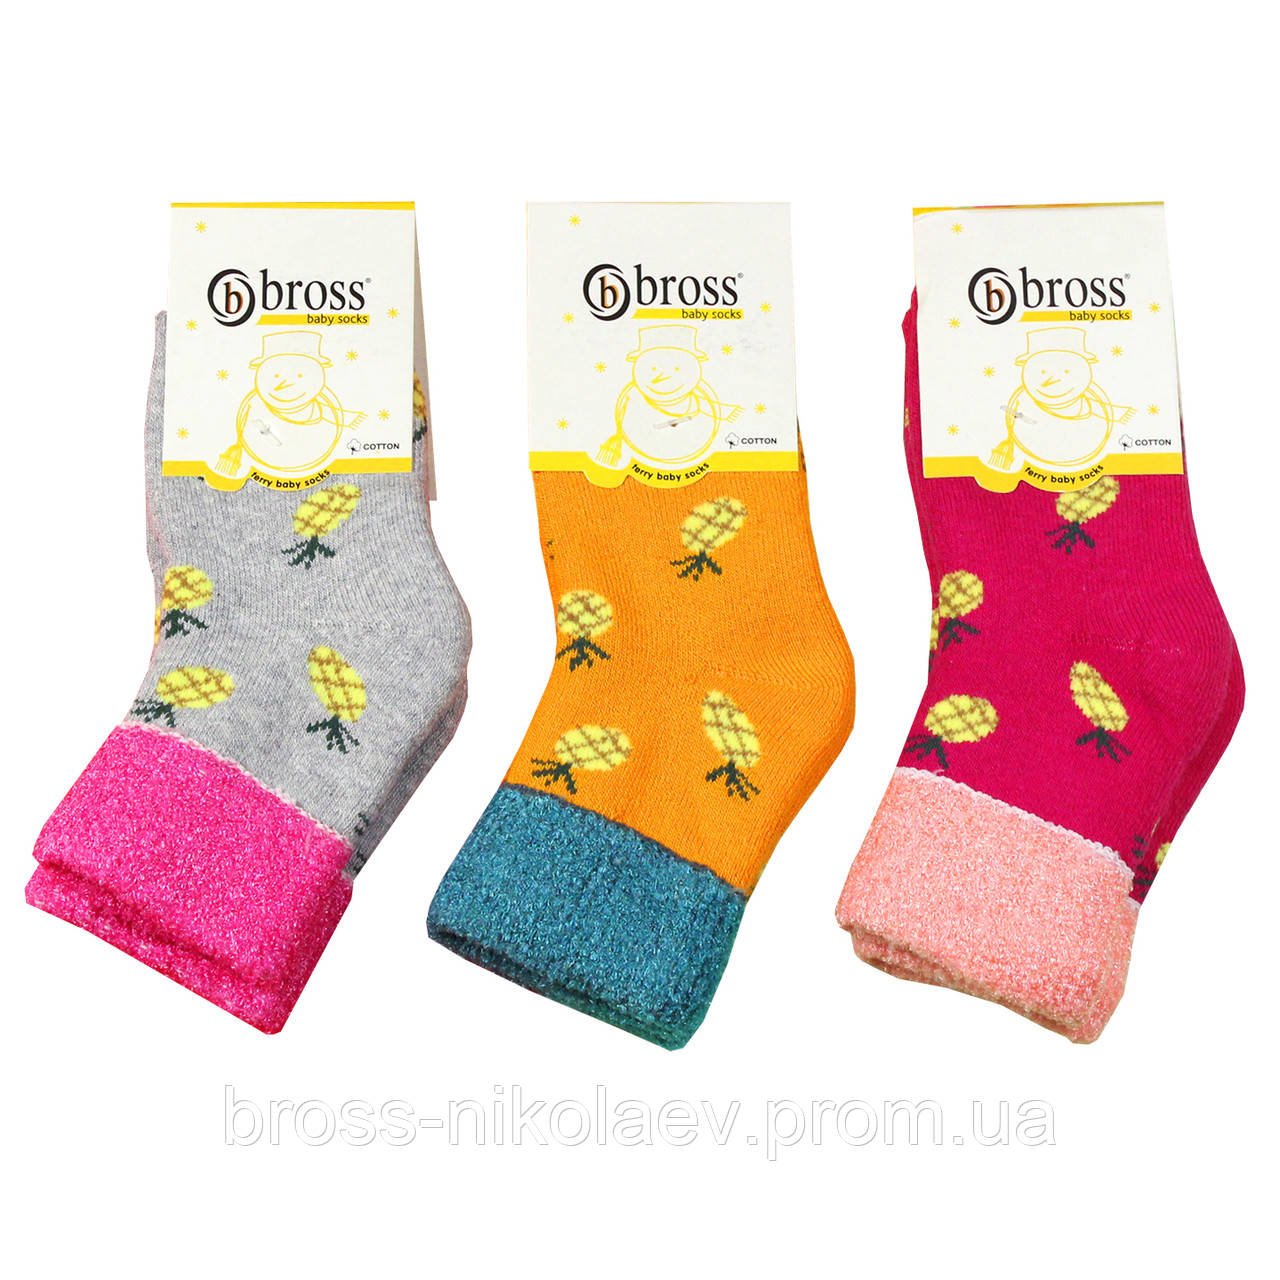 Дитячі махрові шкарпетки 12-18 міс. для малюка теплі зимові носки махра з малюнками для новонароджених BROSS